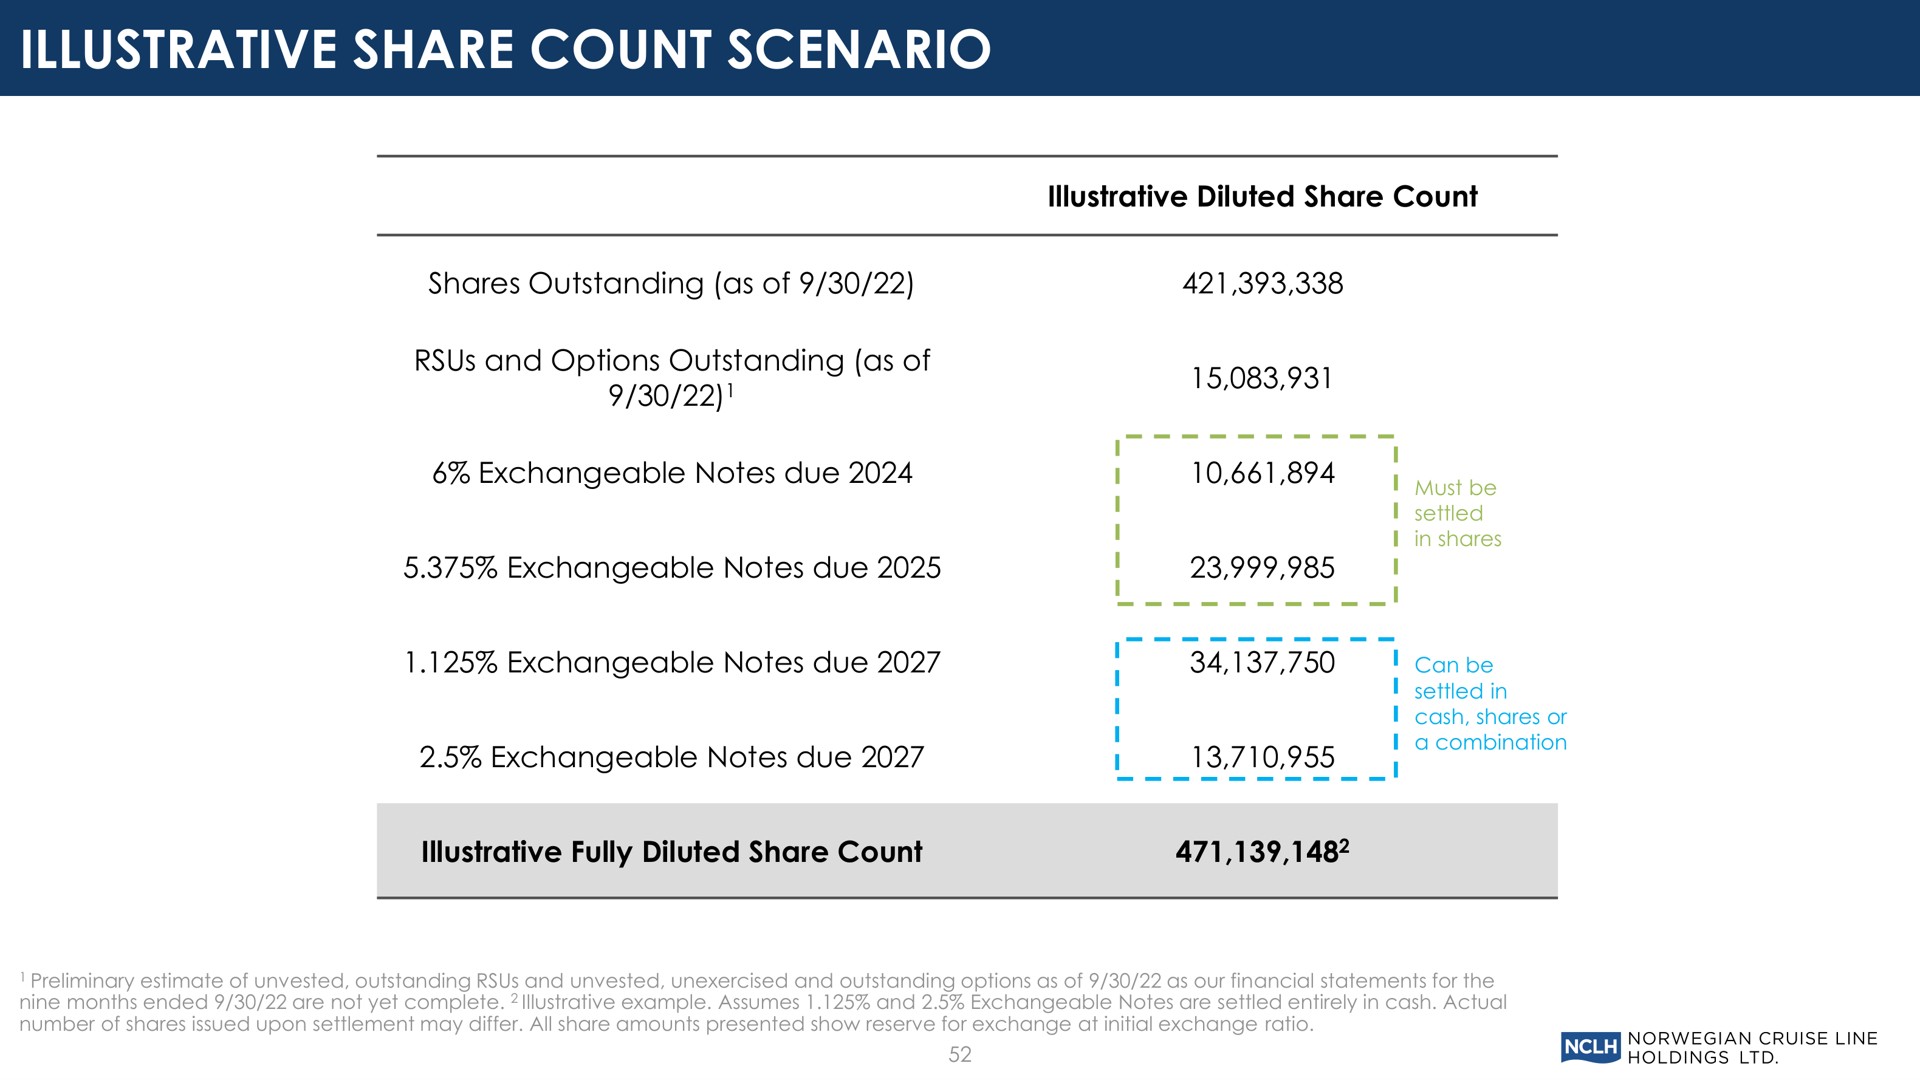 illustrative share count scenario | Norwegian Cruise Line